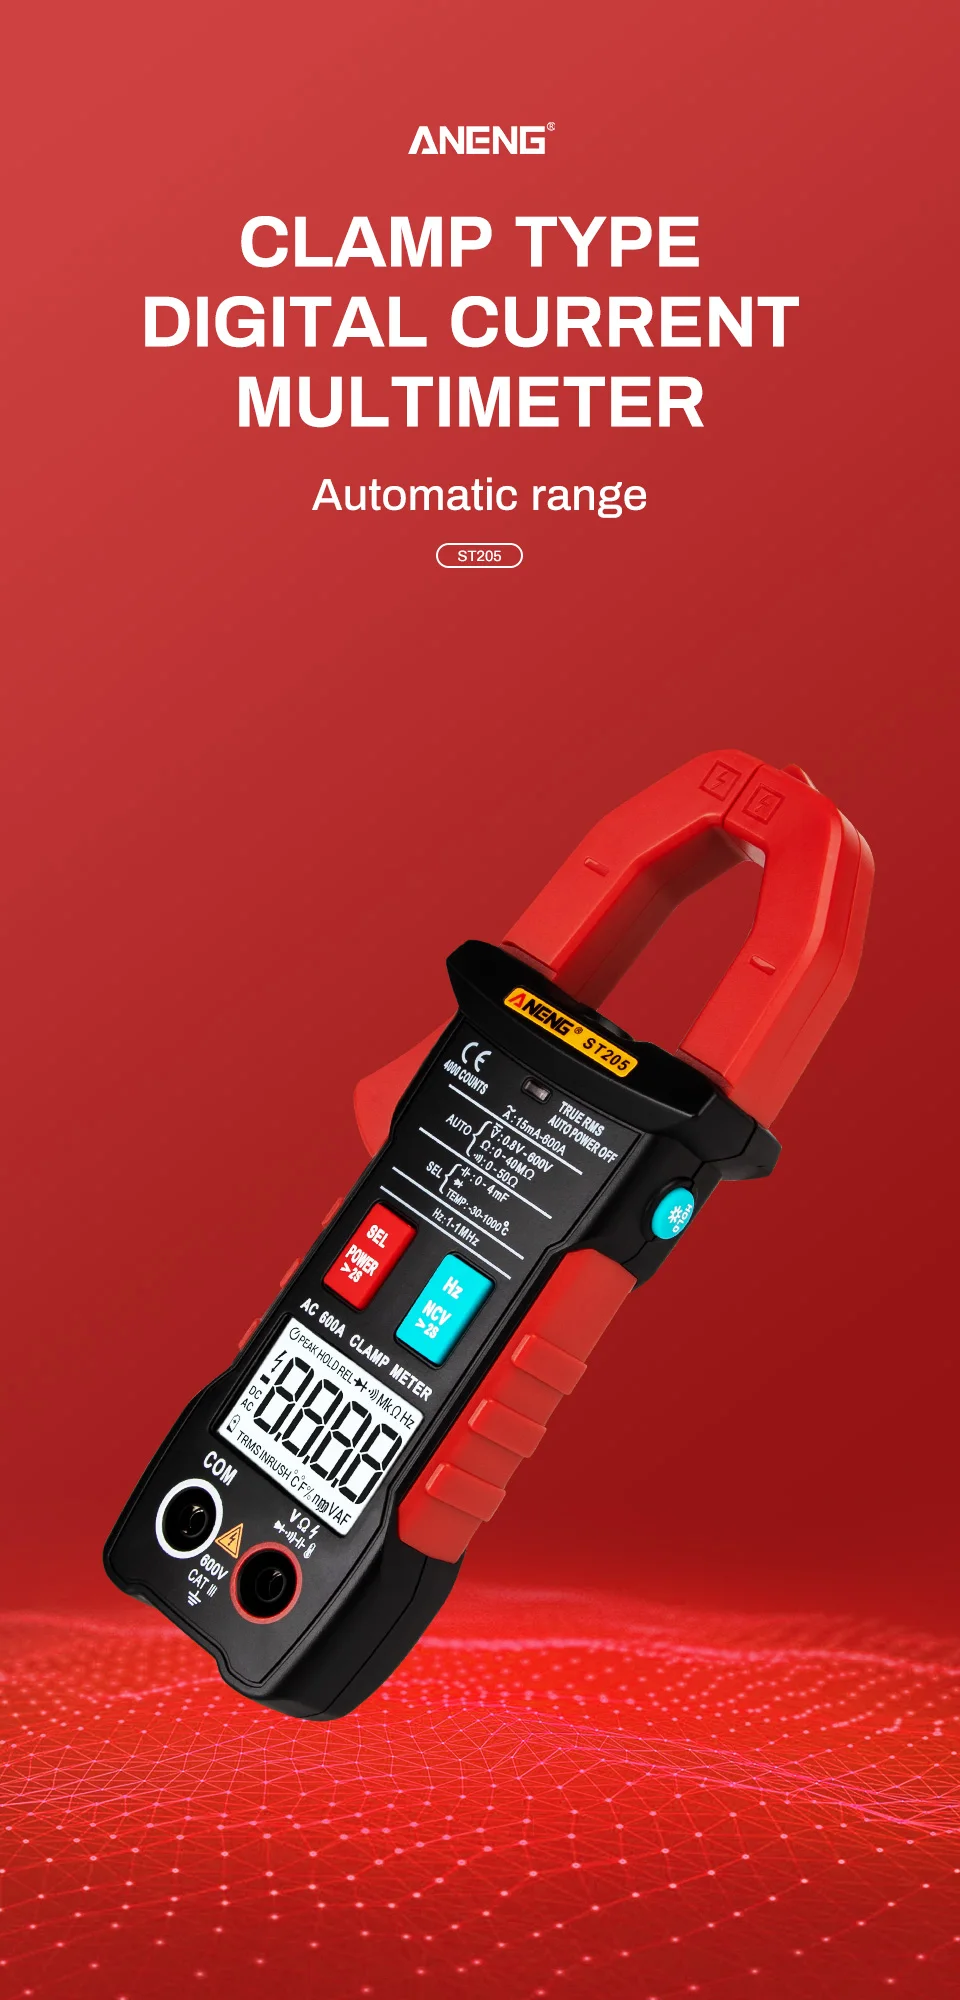 ANENG ST205 Kỹ Thuật Số Clamp Meter Analog Vạn Năng Hiện Tại Kẹp DC/AC Tự Động Thông Minh Phạm Vi Meter Với Nhiệt Độ Tester